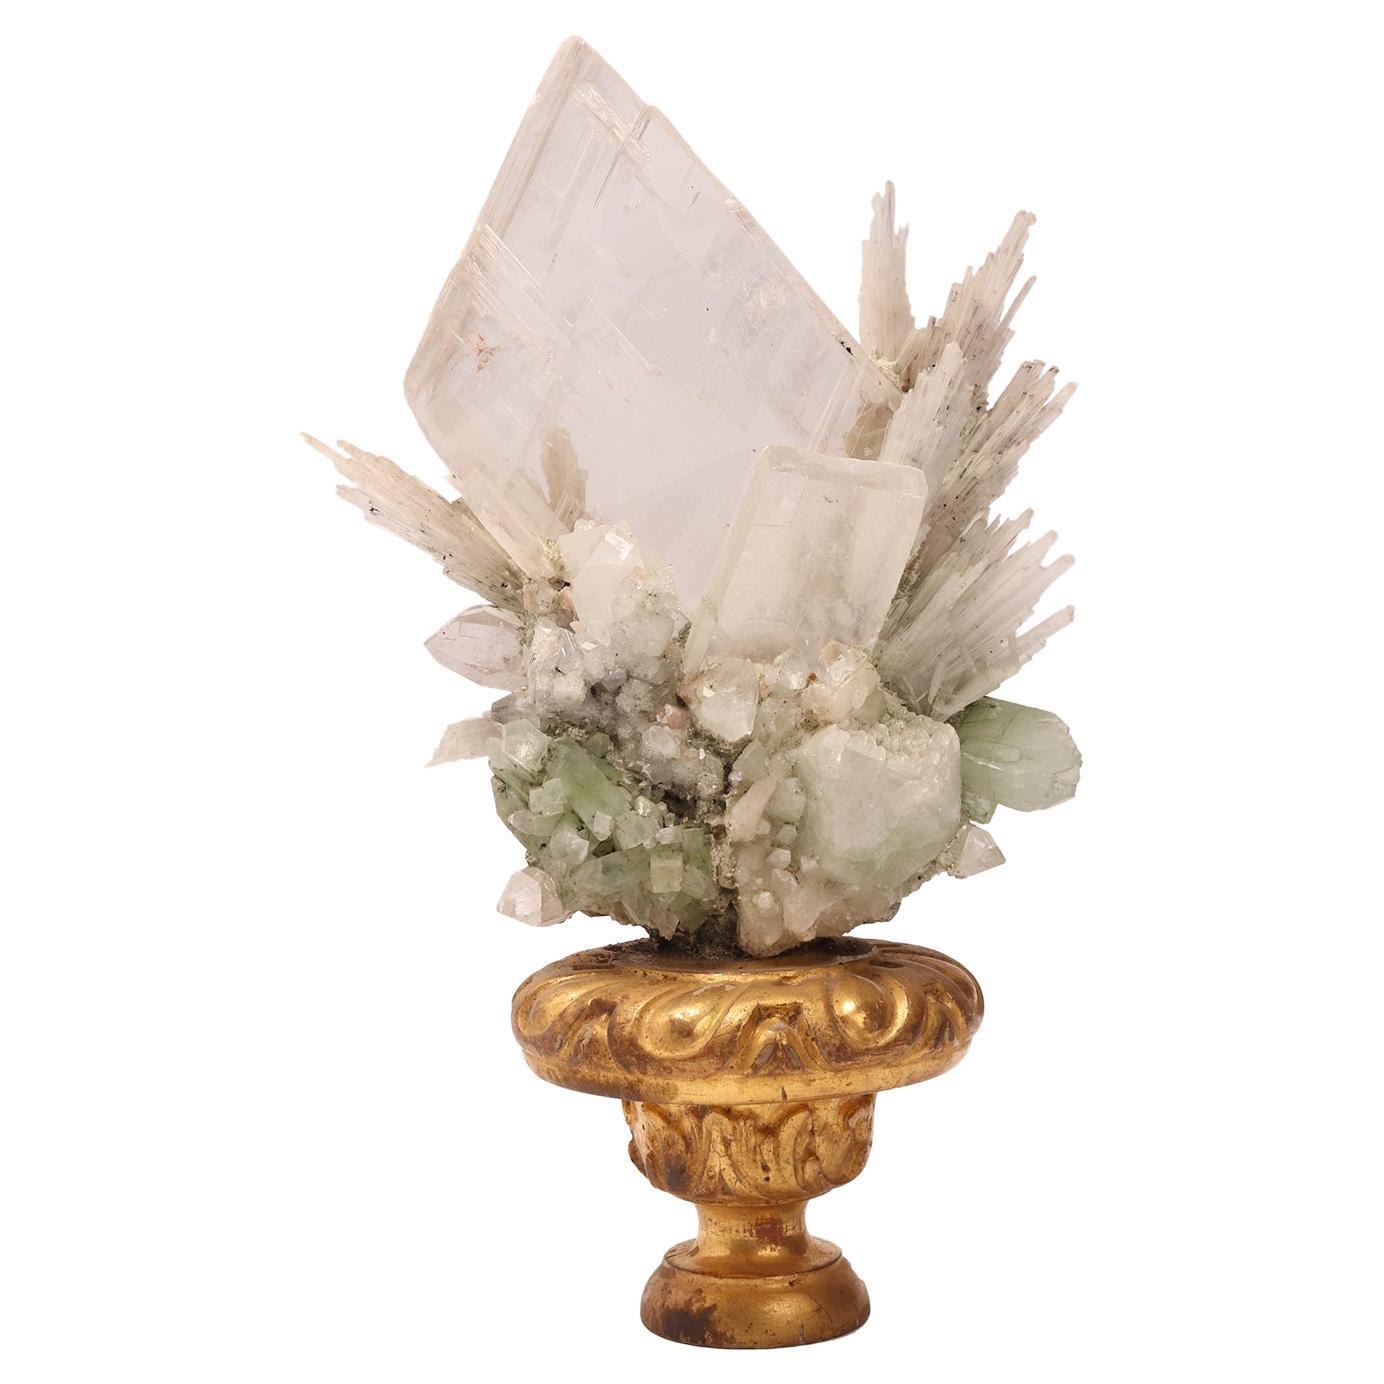 19th Century Natural Specimen: Apophilite, Quartz and Calcite Flowers Crystals, Italy, 1880 For Sale